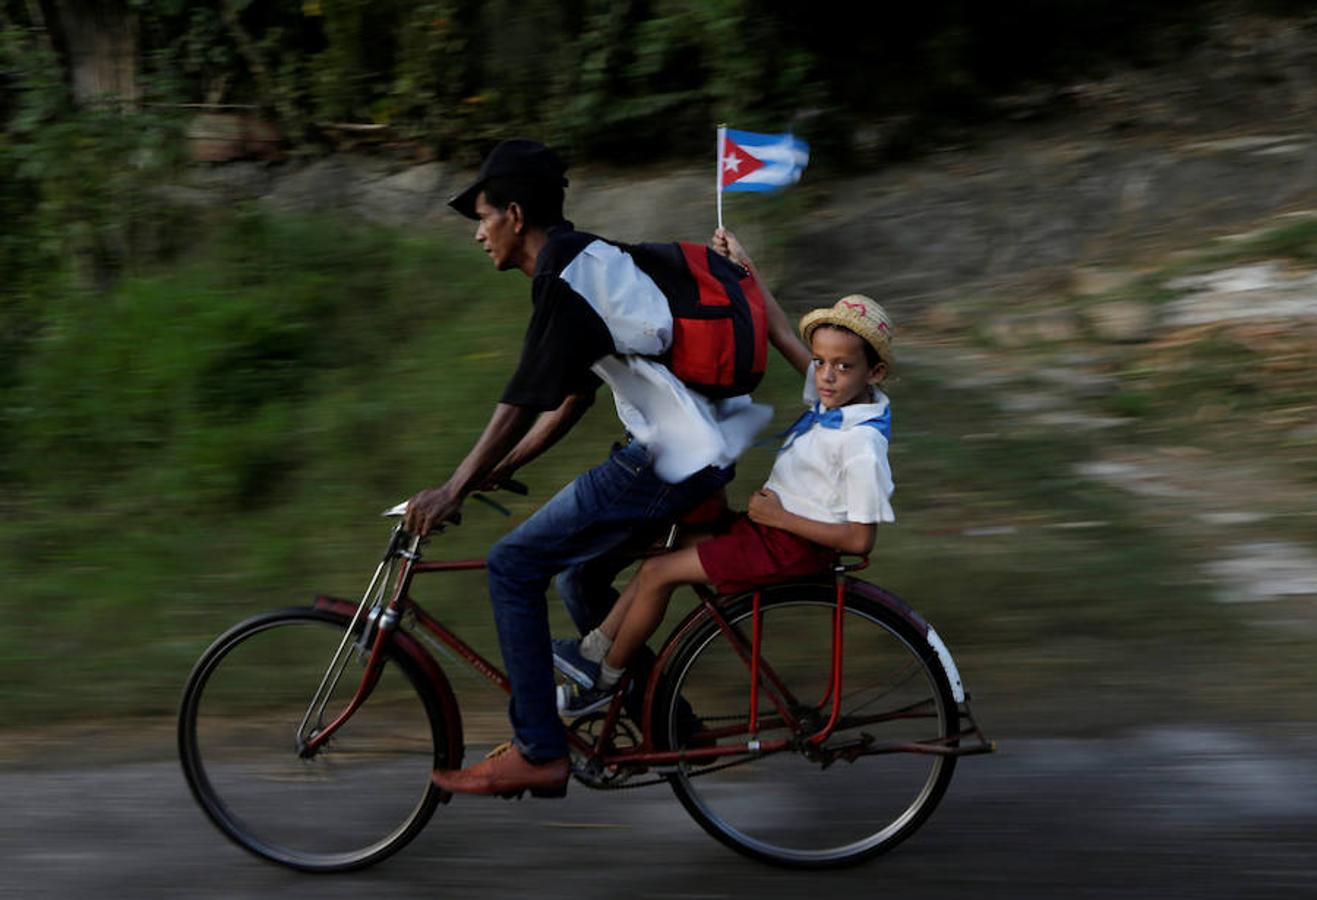 Última pedaladas de un cubano, que se dirigía a Santiago de Cuba en bicicleta junto a su hijo